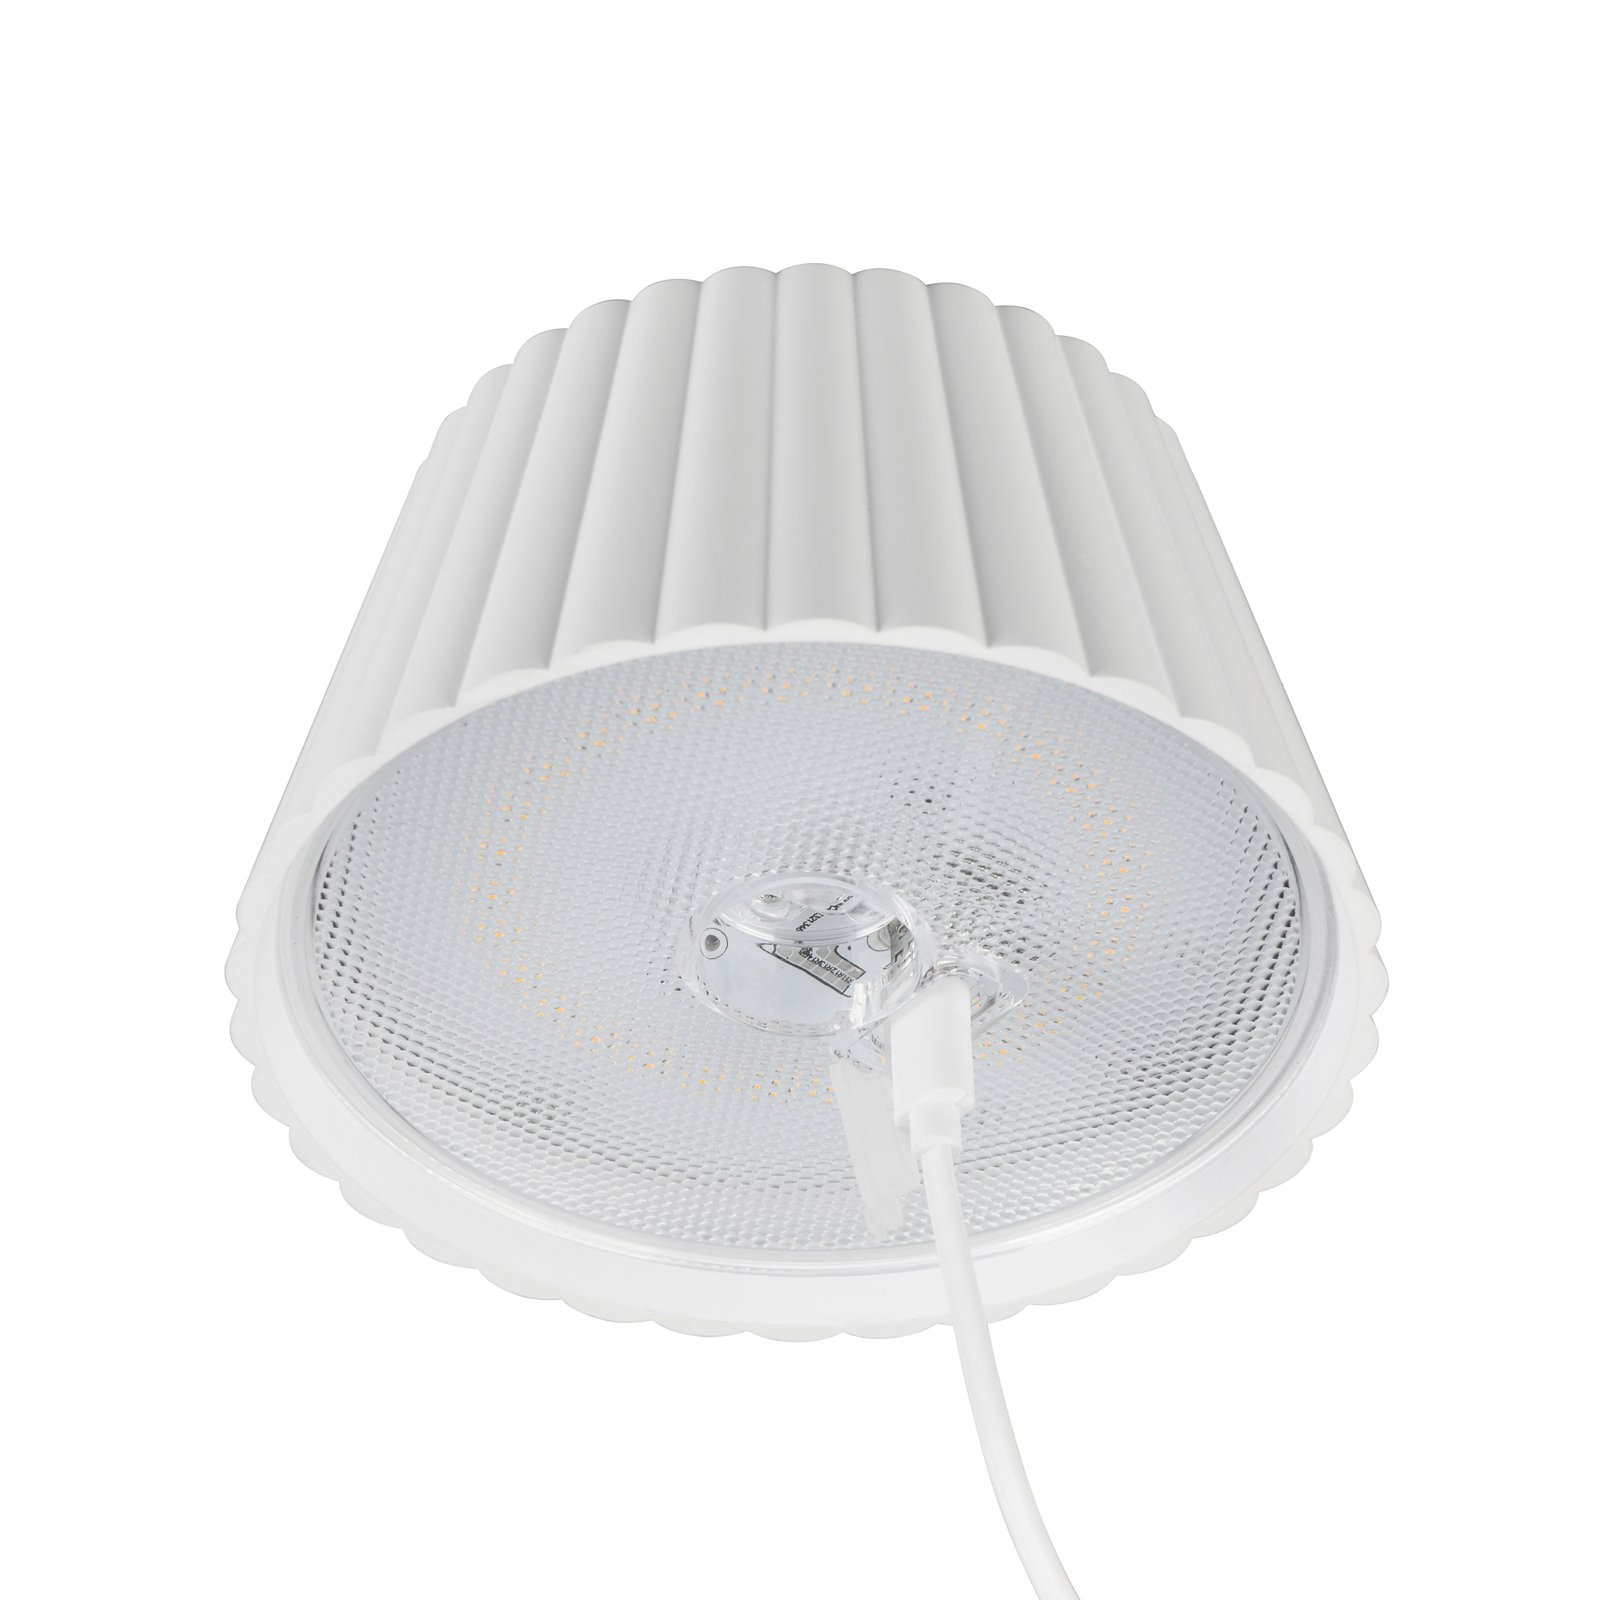 Suarez ladattava LED-pöytävalaisin, valkoinen, korkeus 39 cm, metallia